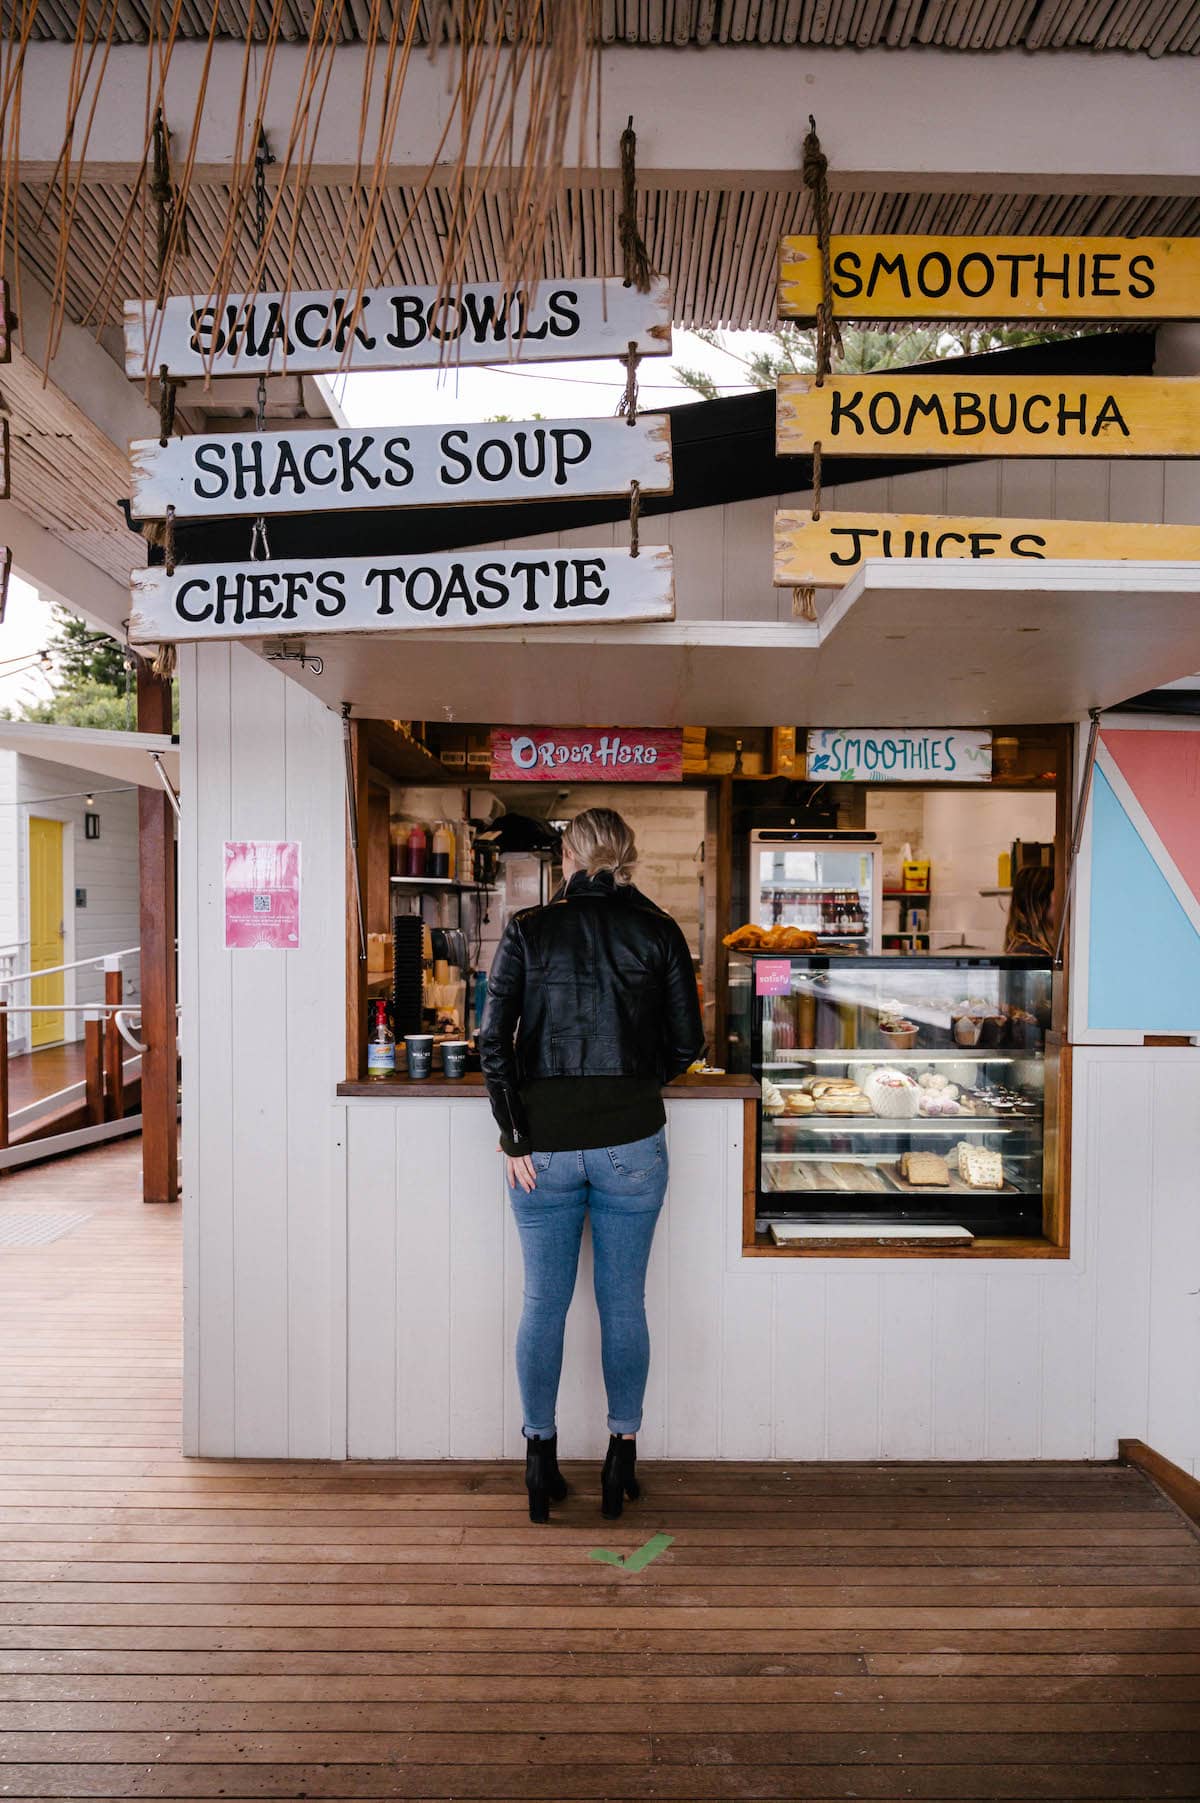 the little shack cafe port macquarie breakwall